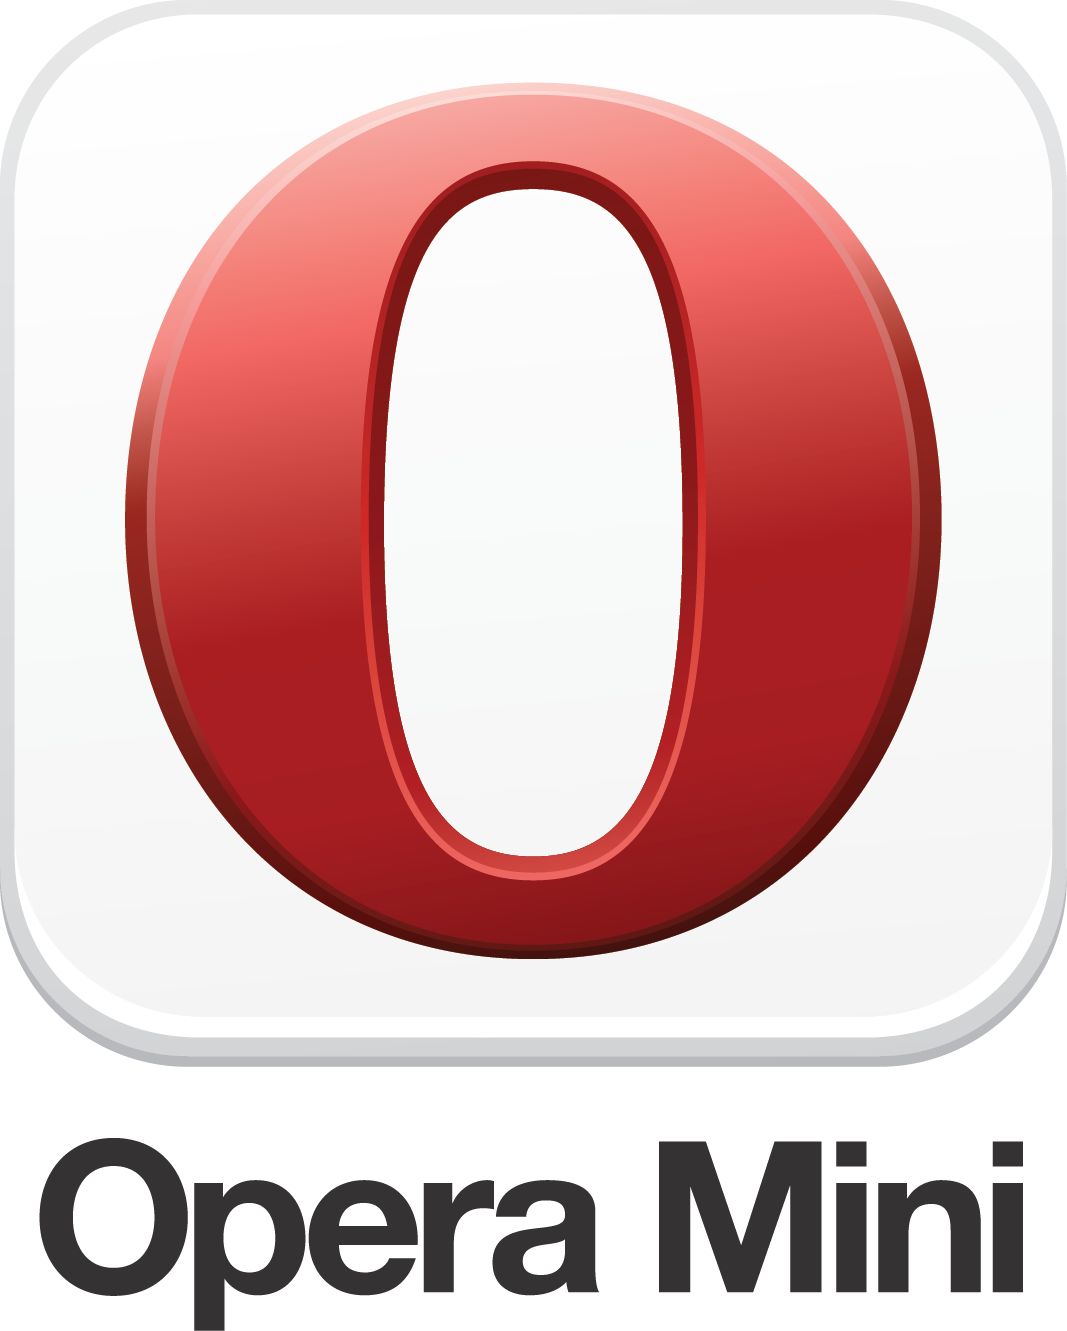 Dónde puedo descargar la última versión de Opera Mini Handler 4.4 APK